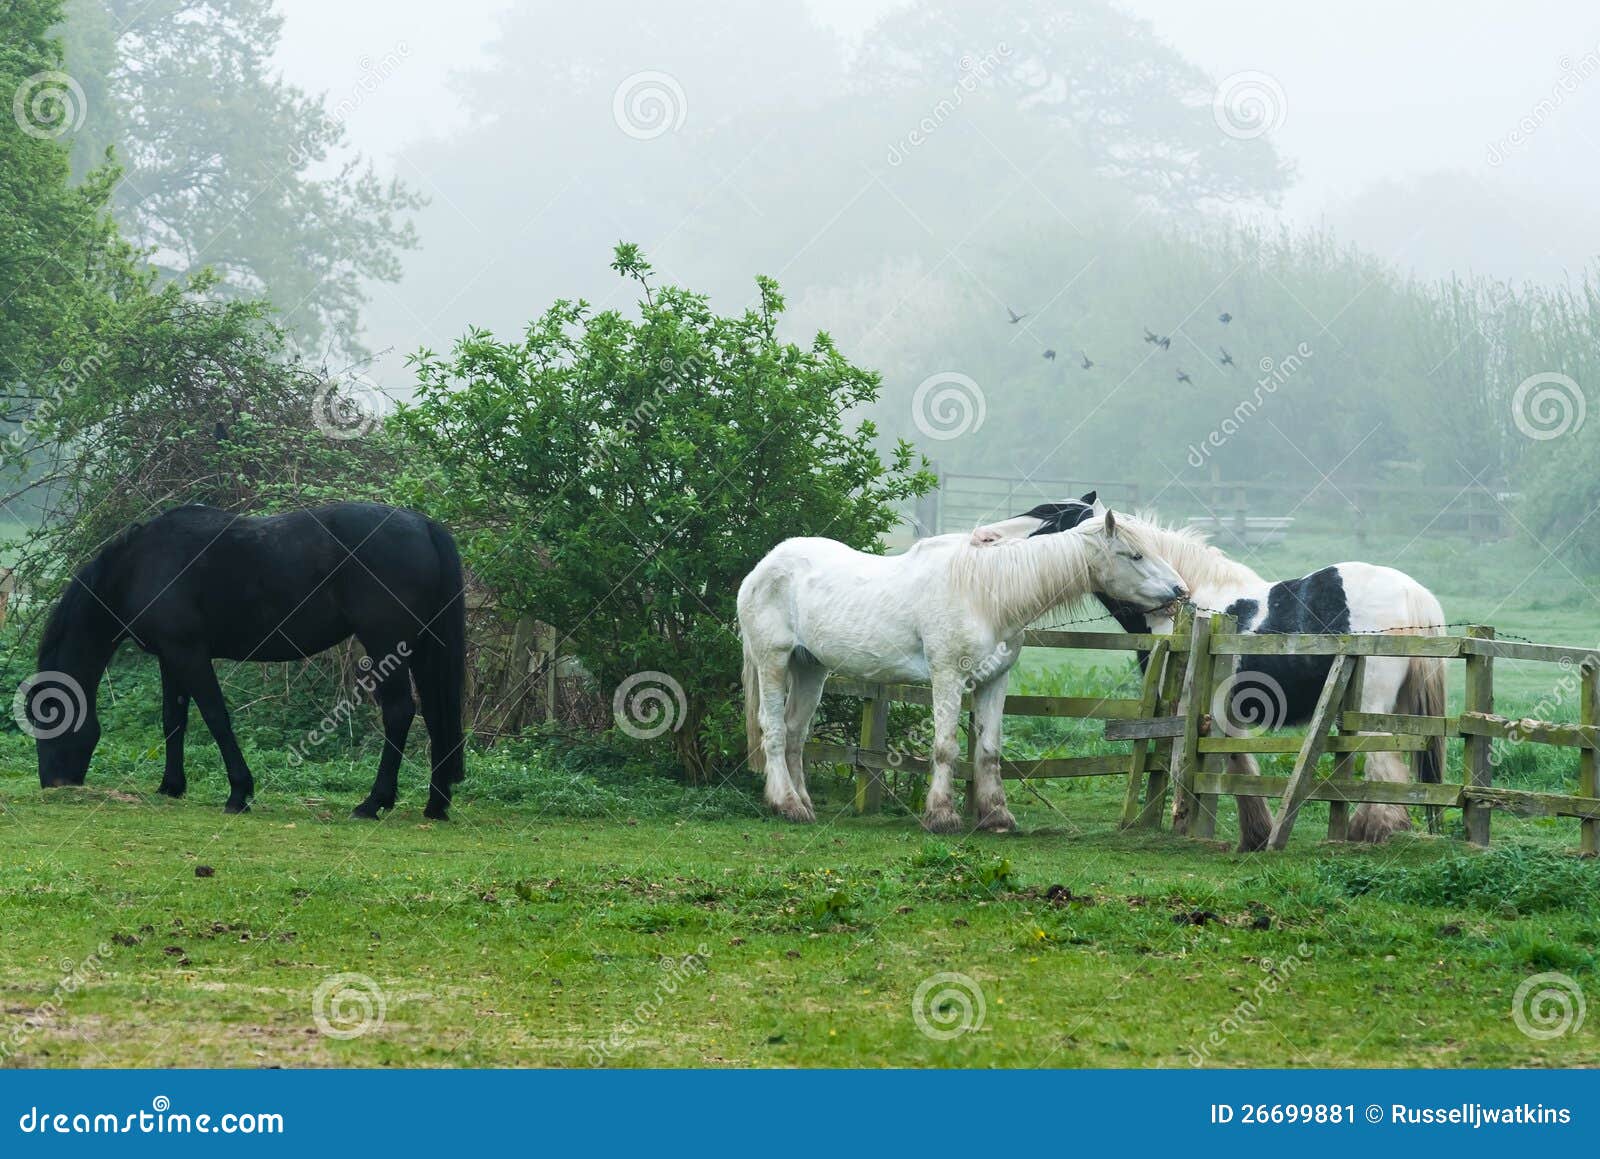 三匹马在一起的图片,一辈子在一起的图片,三匹马的图片大全大图_大山谷图库